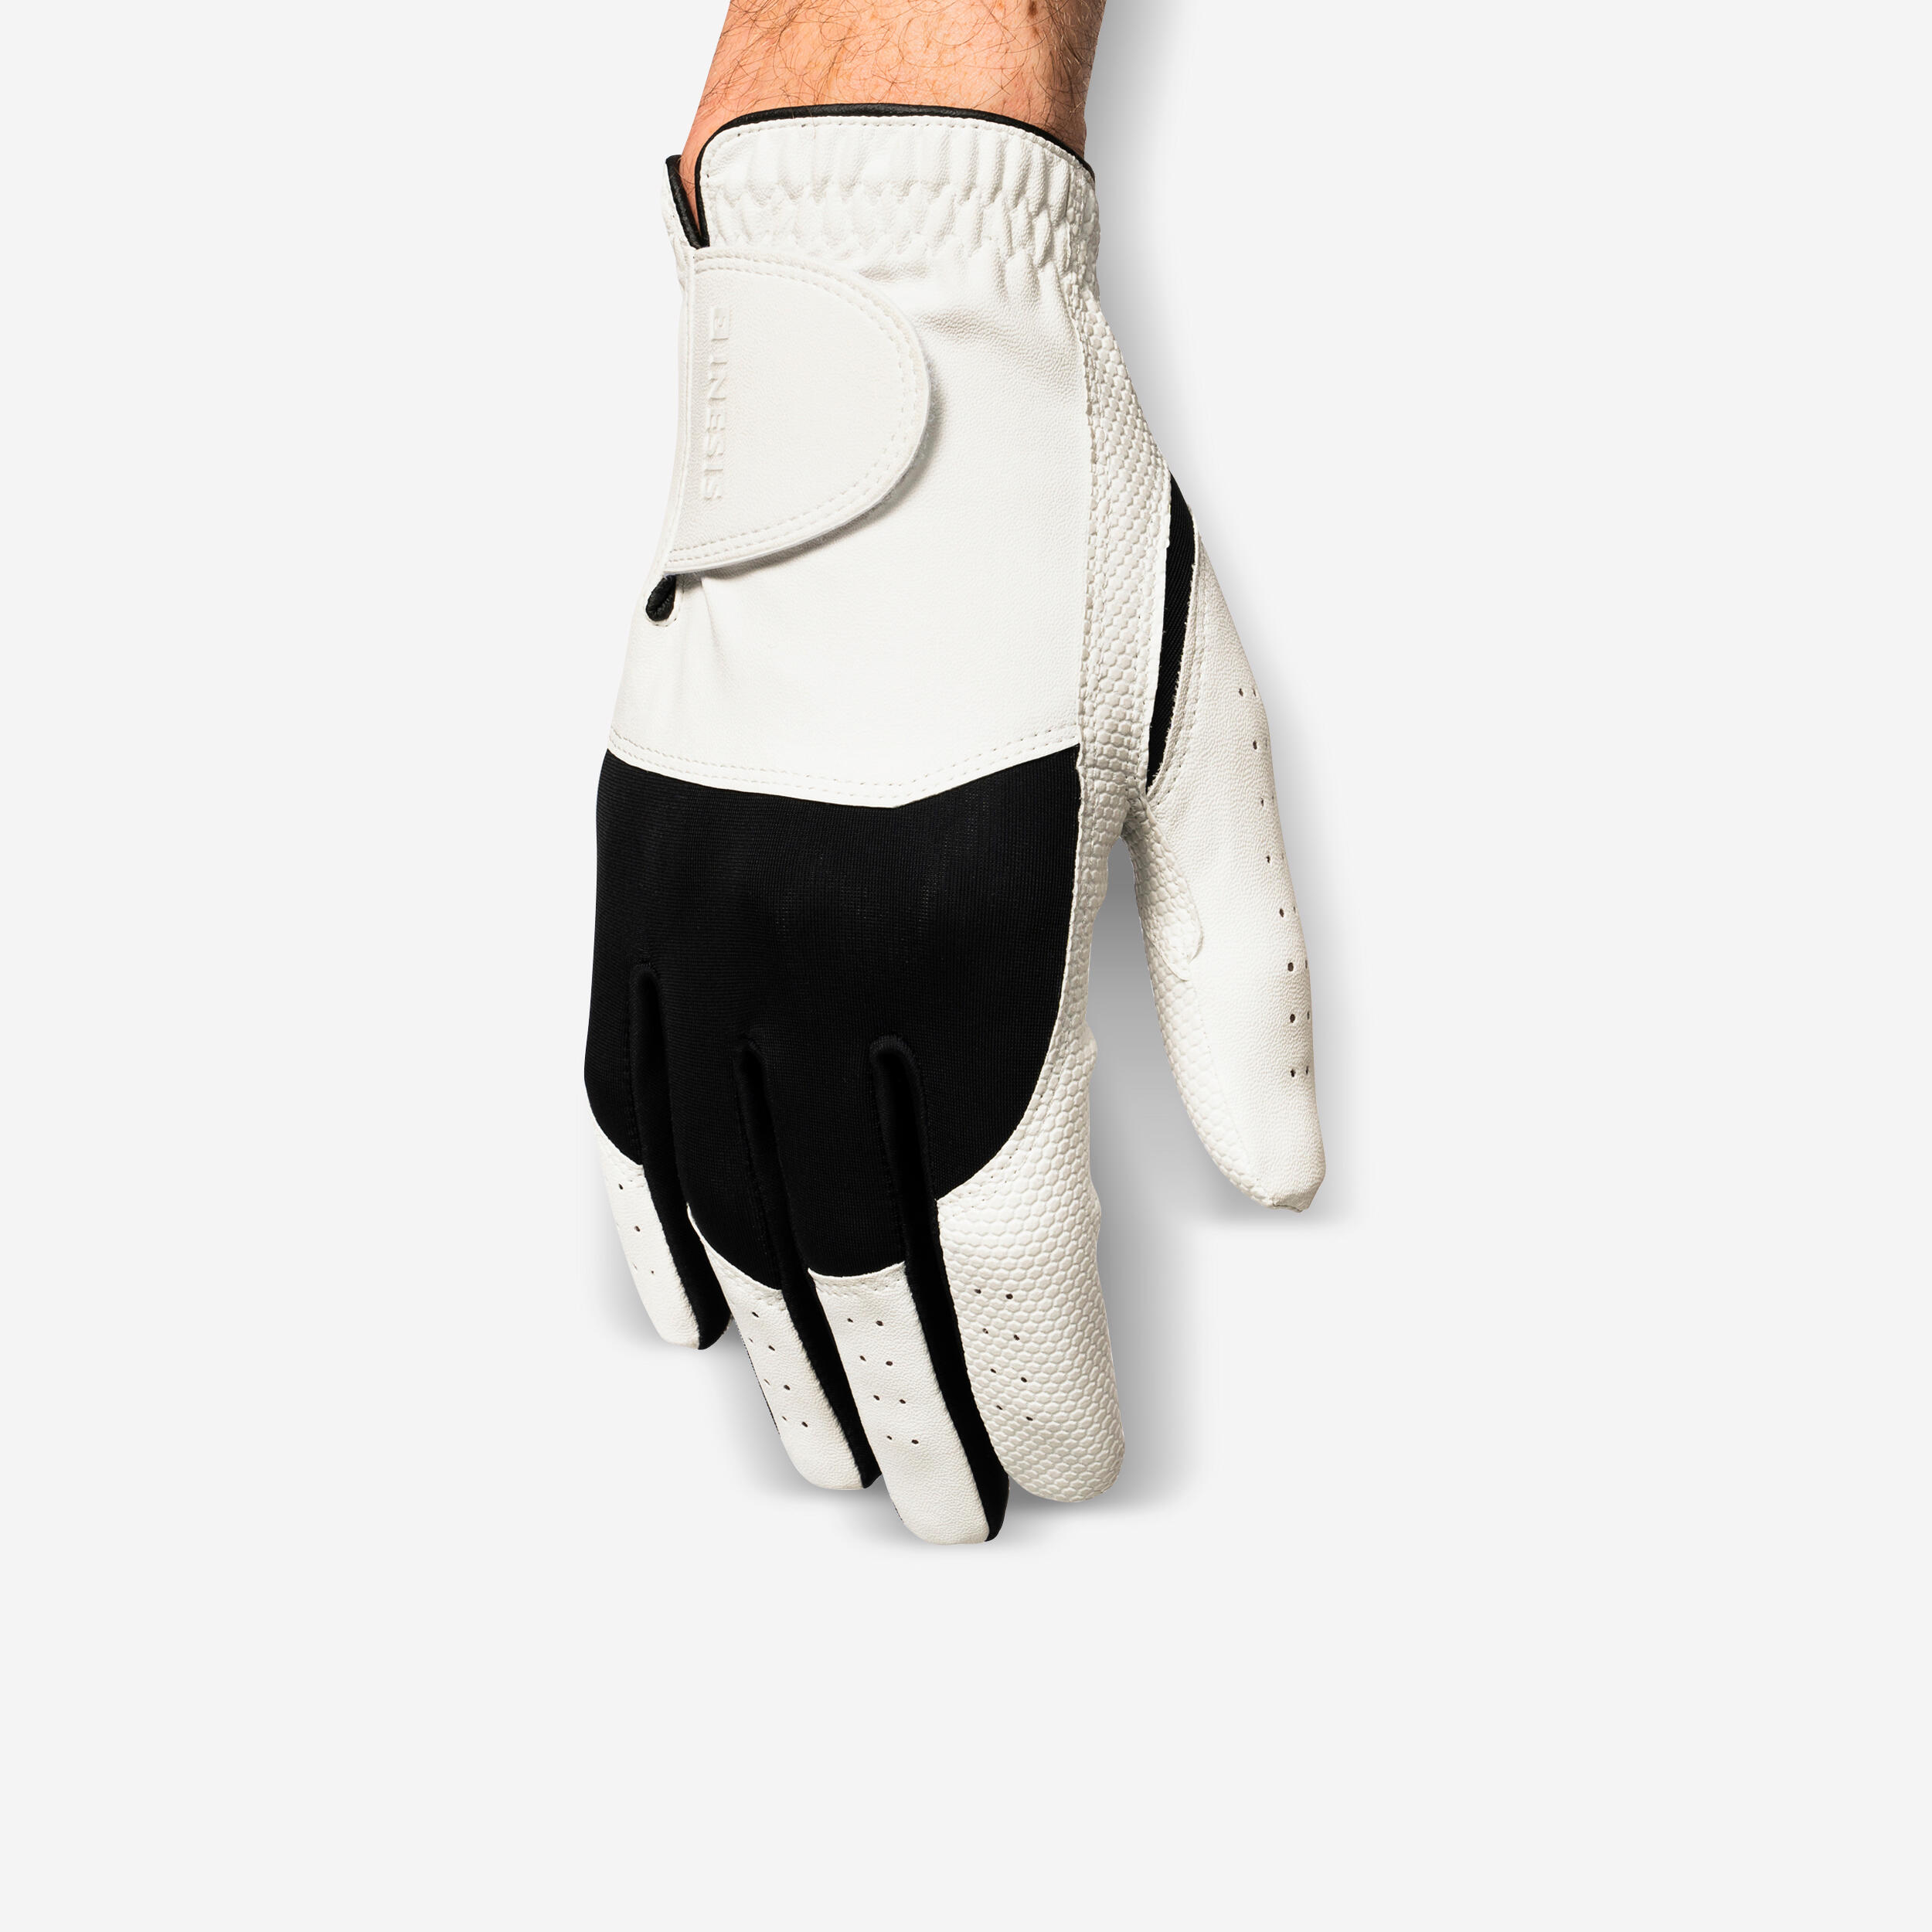 Men’s LH Golf Glove - Resistance 100 White/Black - INESIS